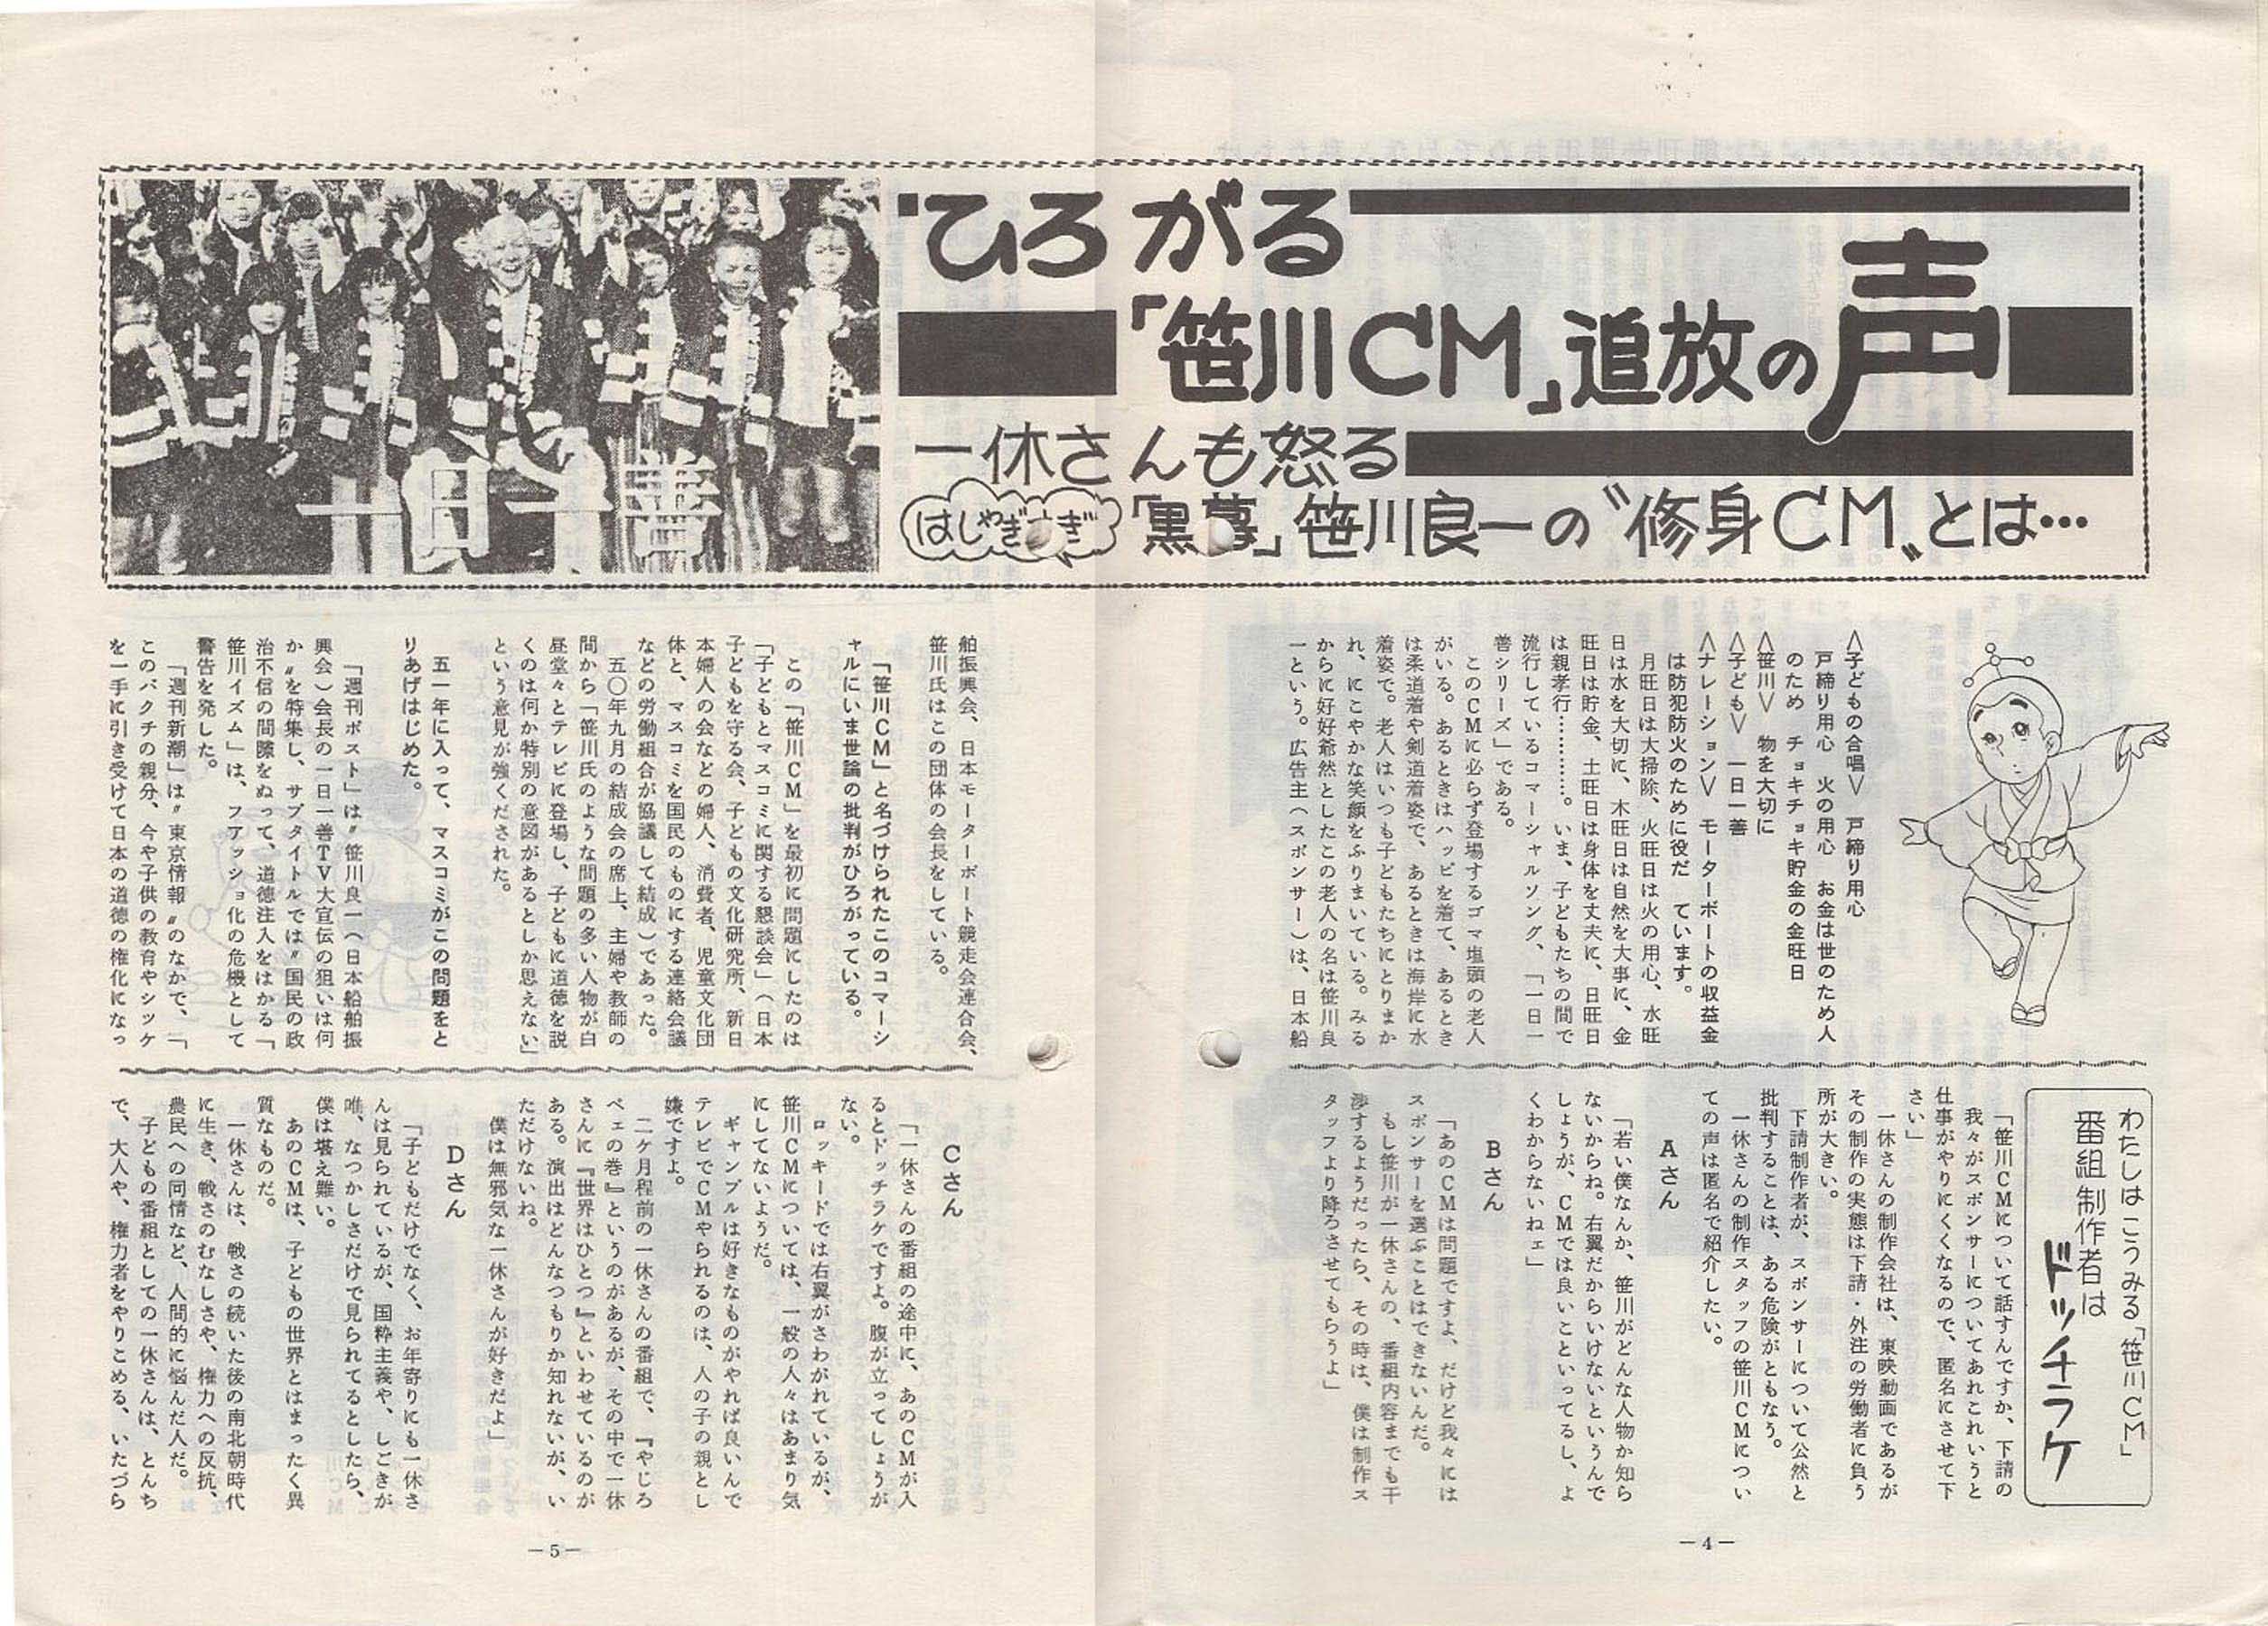 1976年「アニメれぽーと」より「特集-ひろがる笹川CM追放の声」_c0024539_20215700.jpg